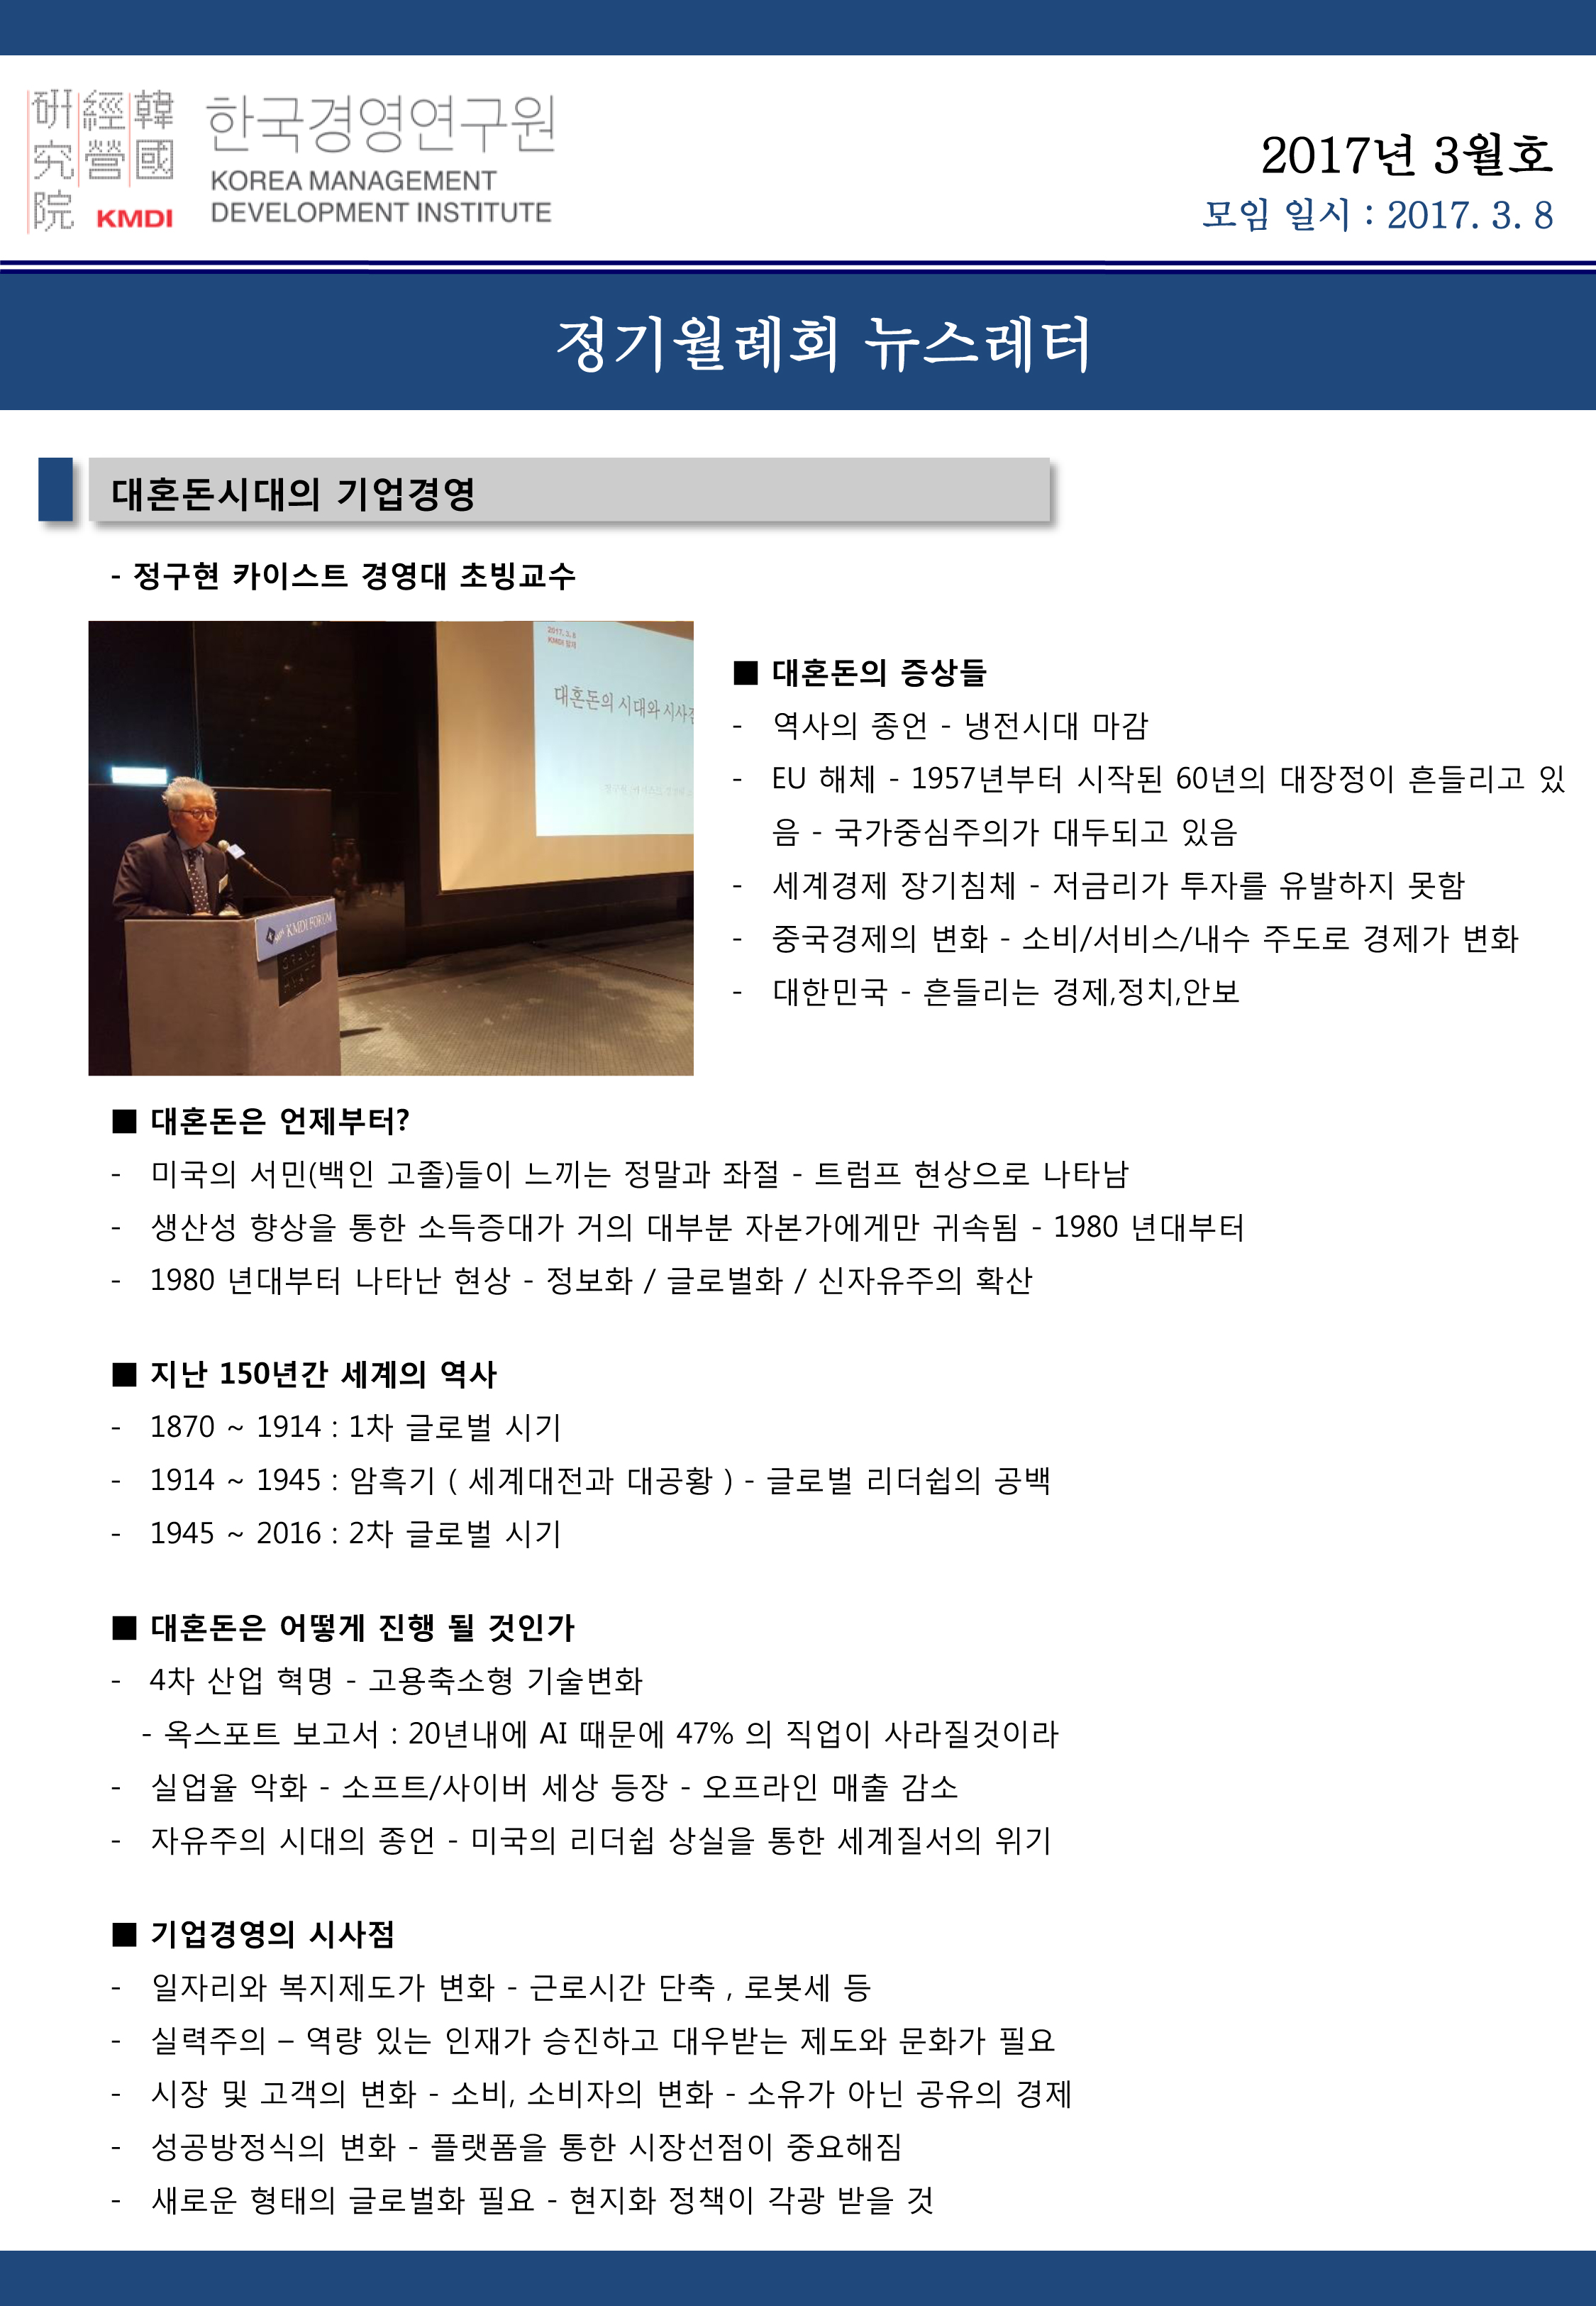 정기월례회-뉴스레터_17년-3월호.jpg